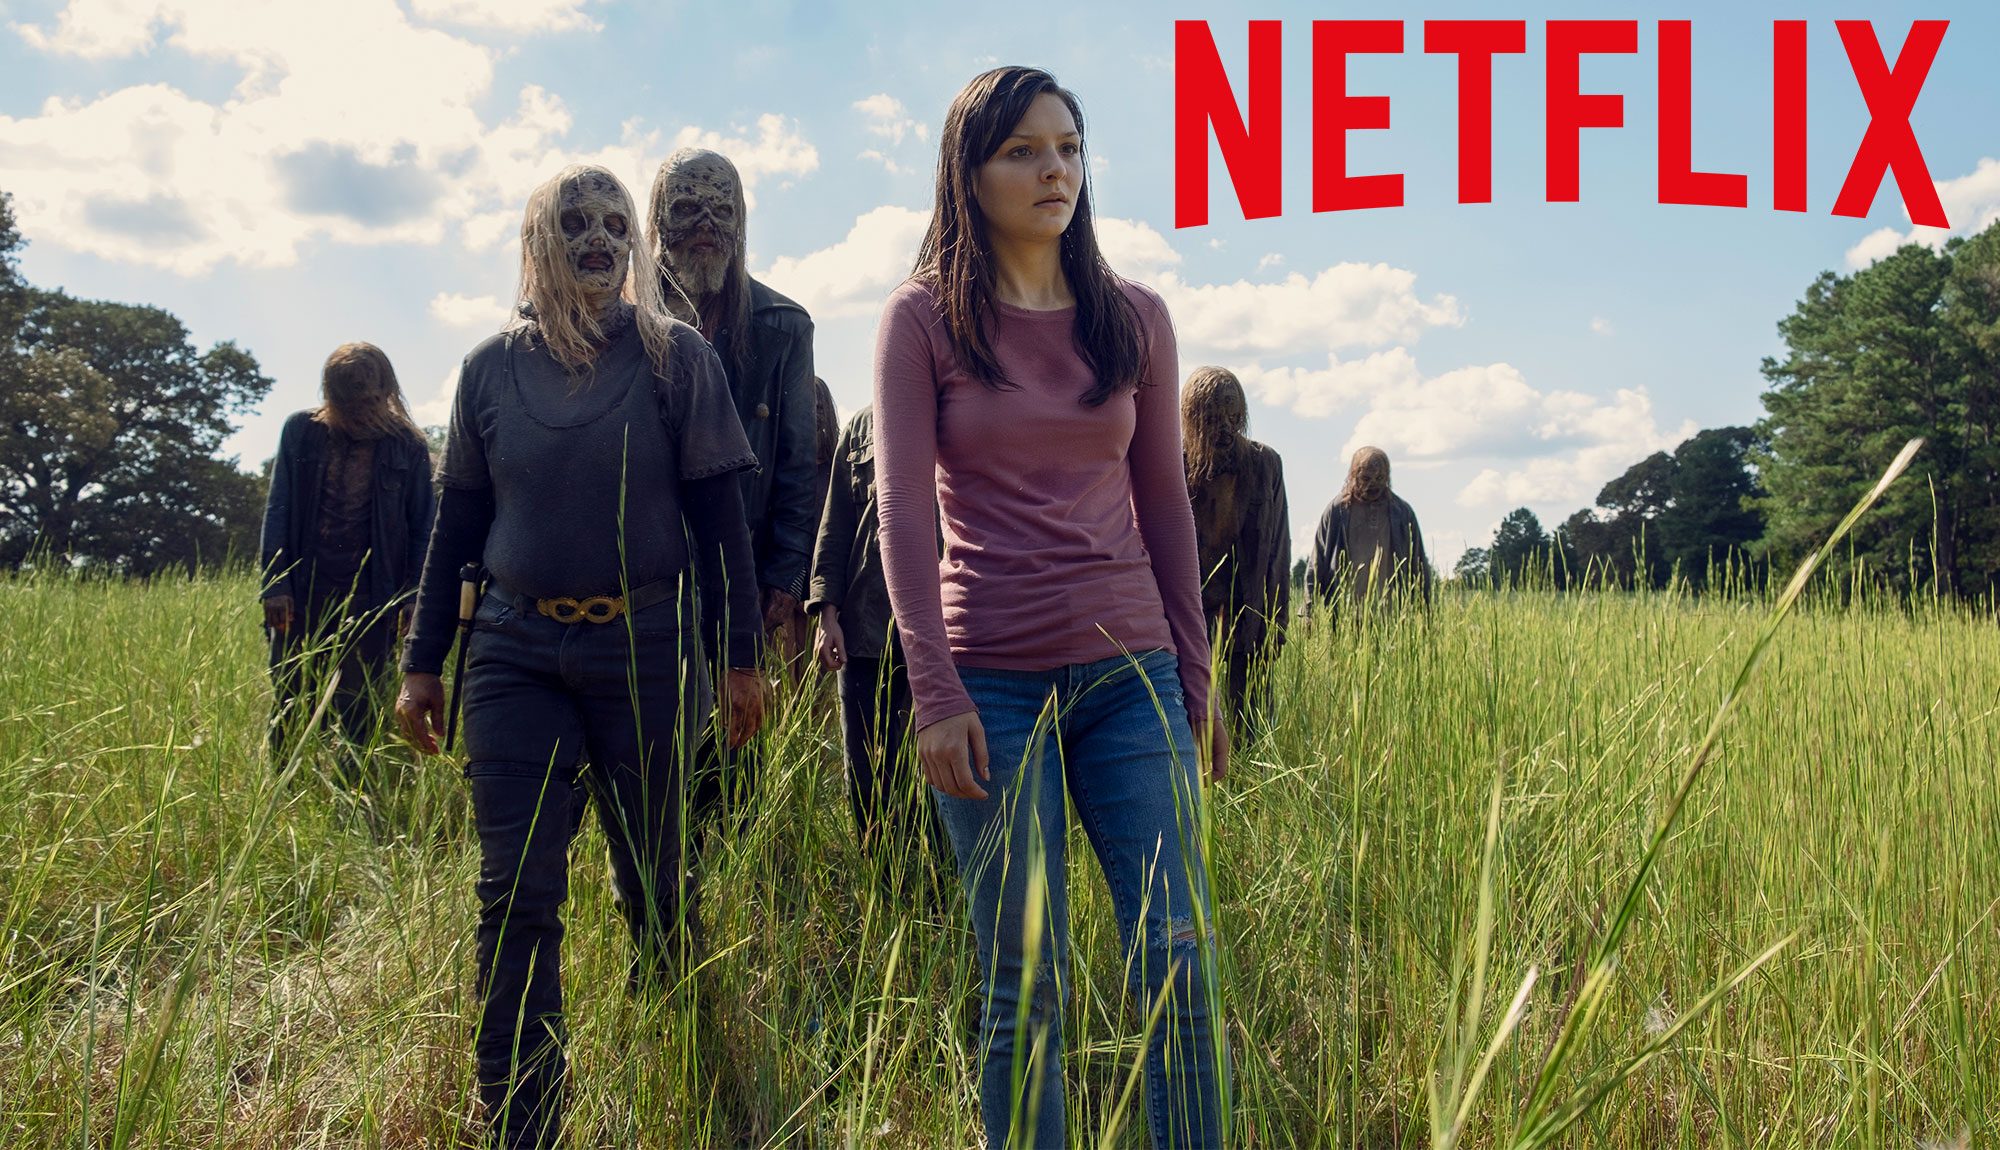 The Walking Dead Season 9 Gets Netflix Release Date